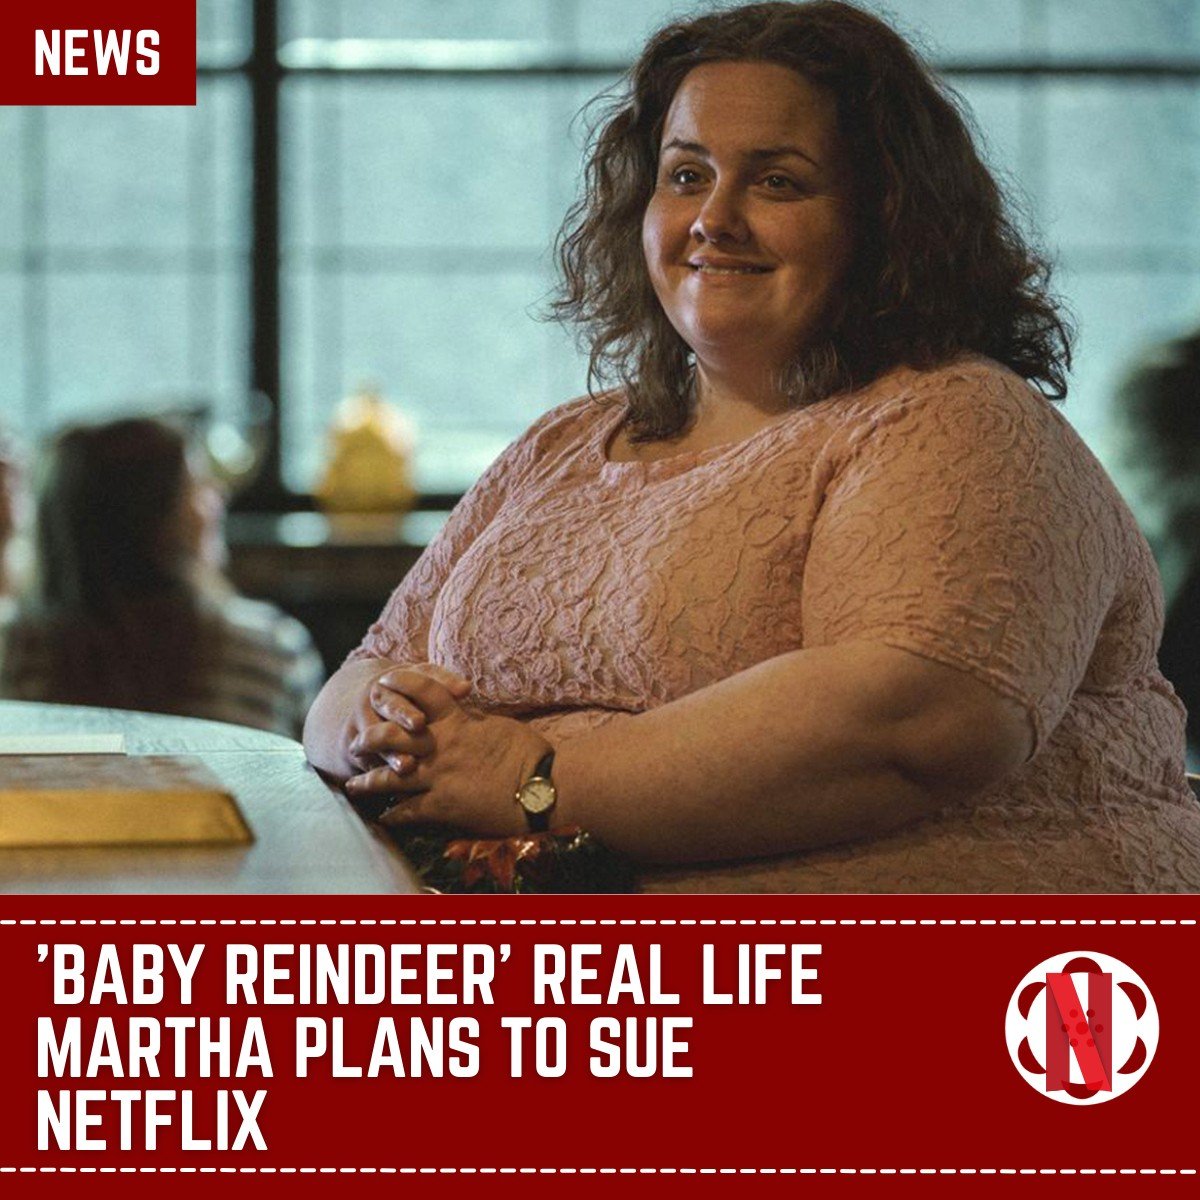 Η πραγματική Μάρθα του Baby Reindeer μίλησε δημόσια και απειλεί με αγωγή κατά του Netflix